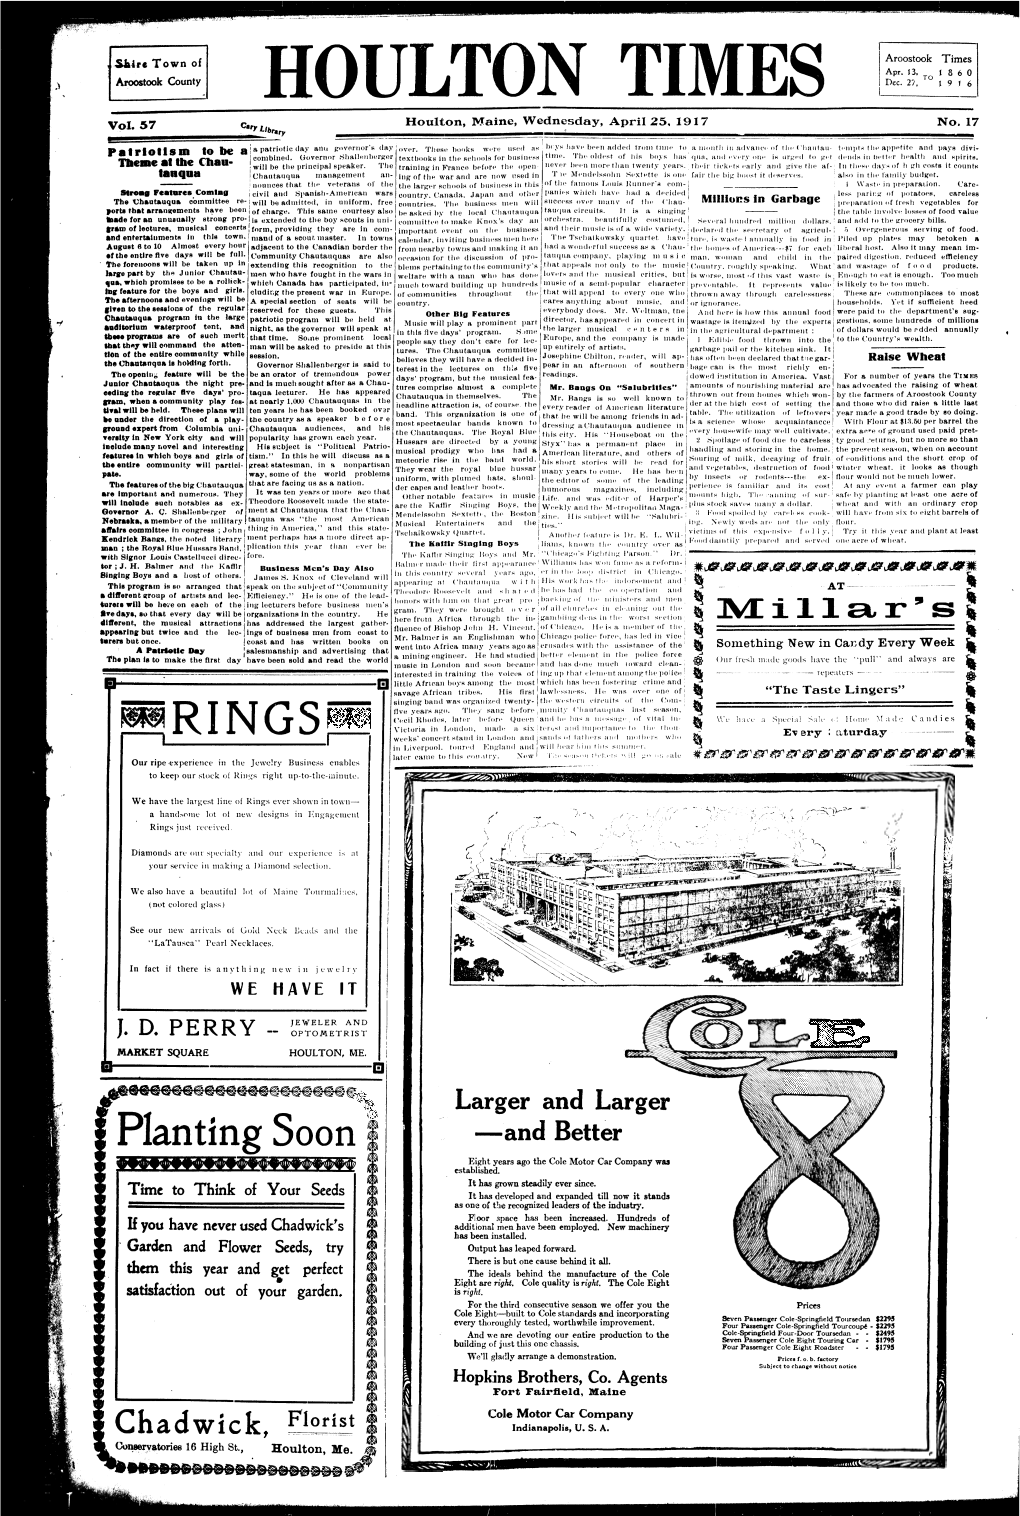 Houlton Times, April 25, 1917